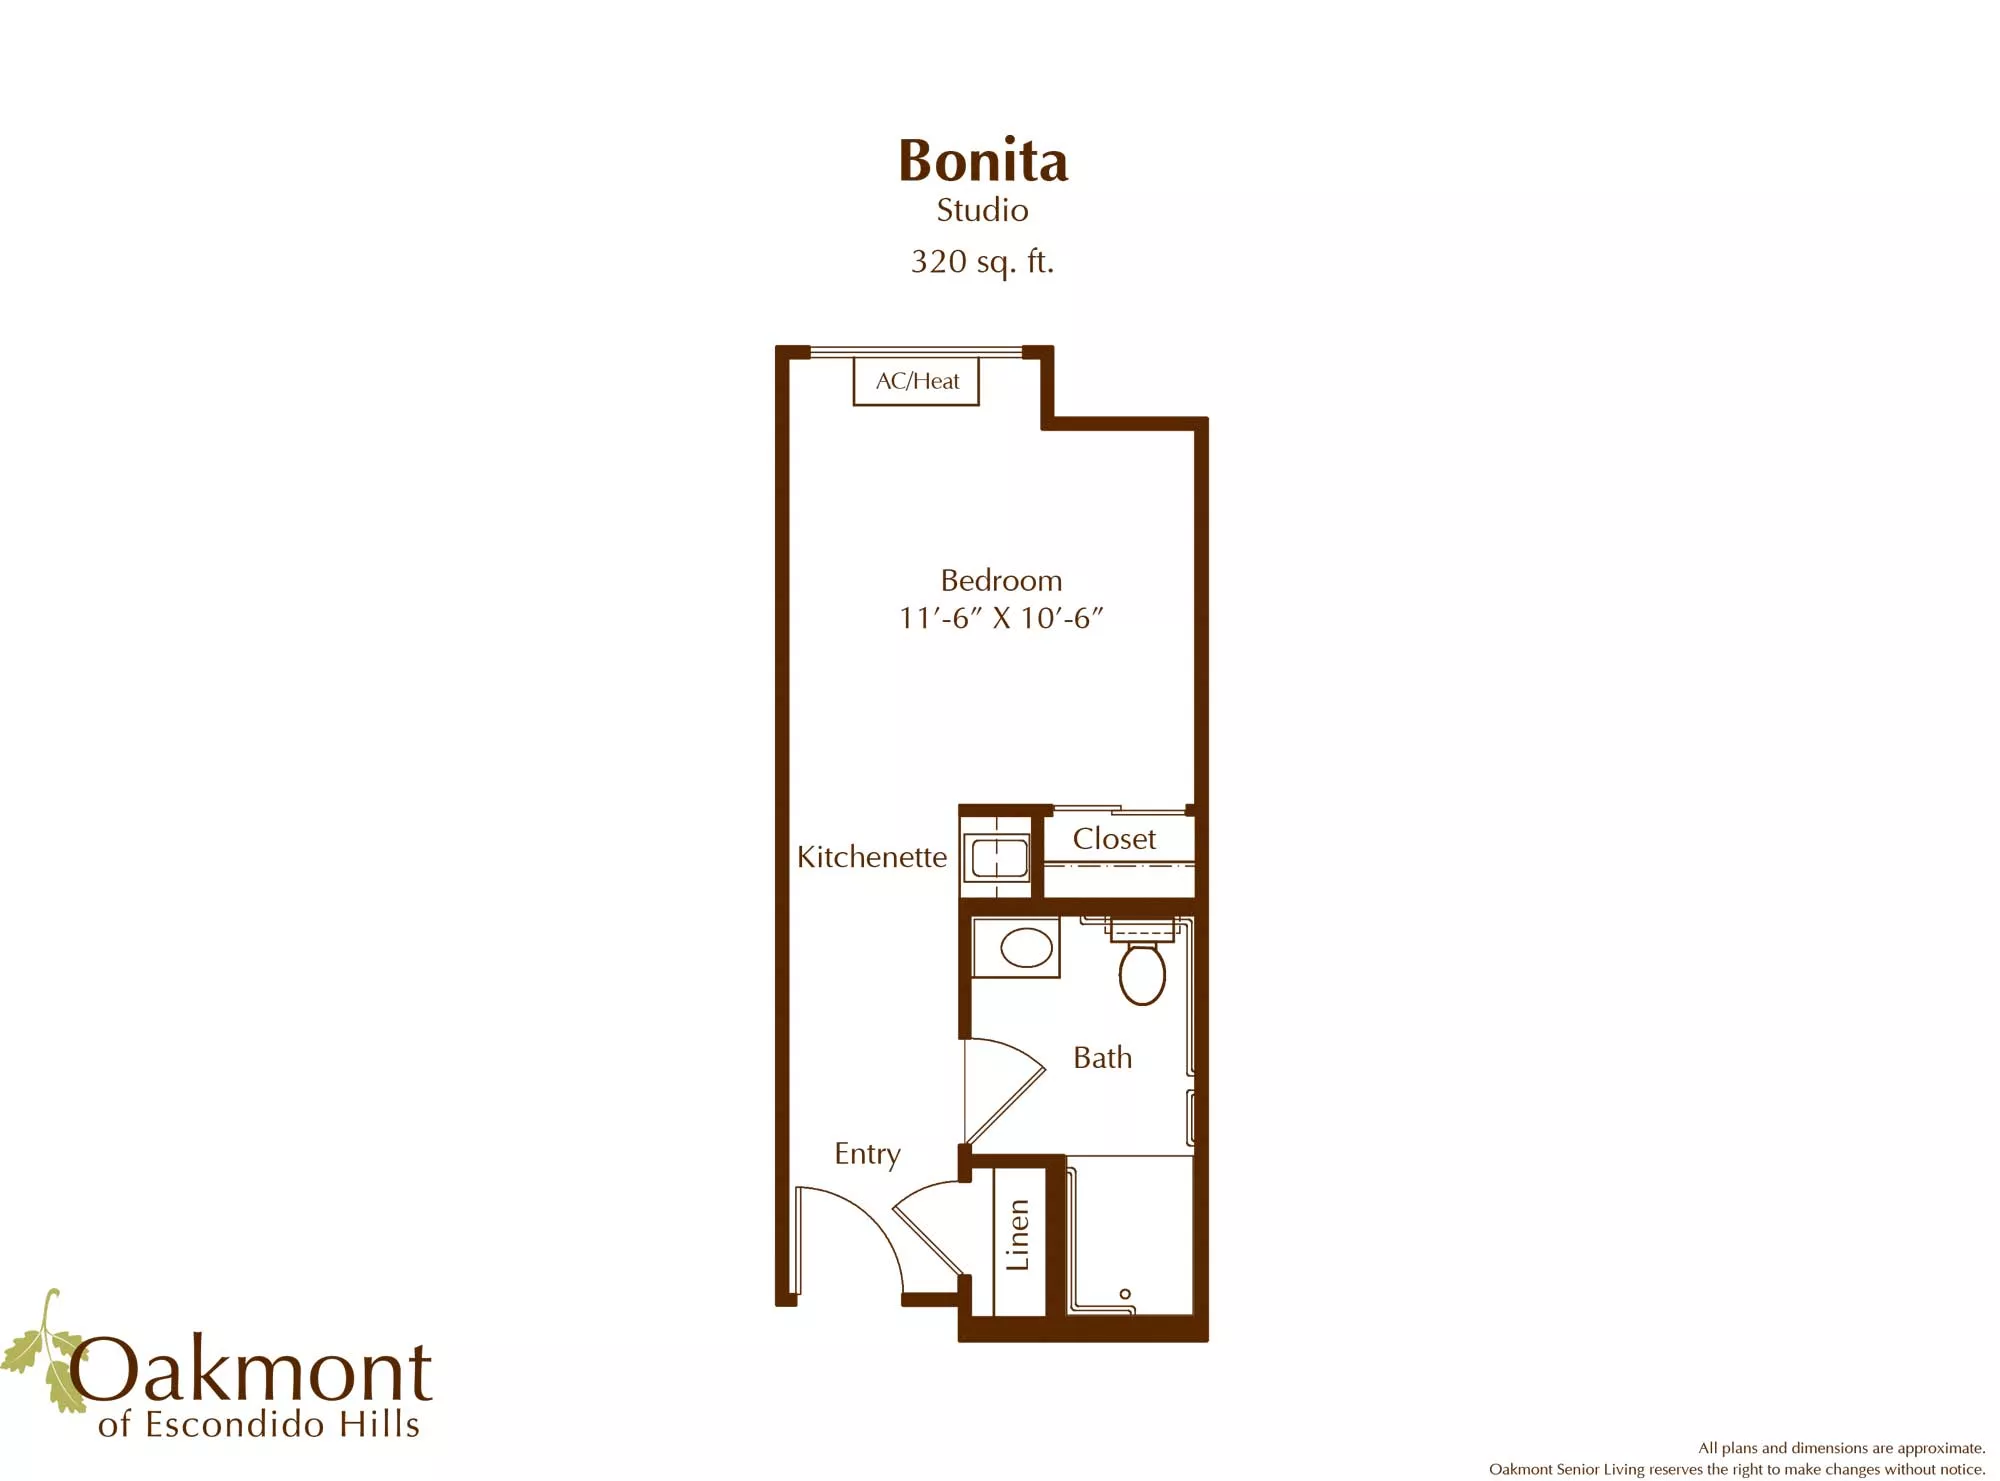 Bonita studio floor plan